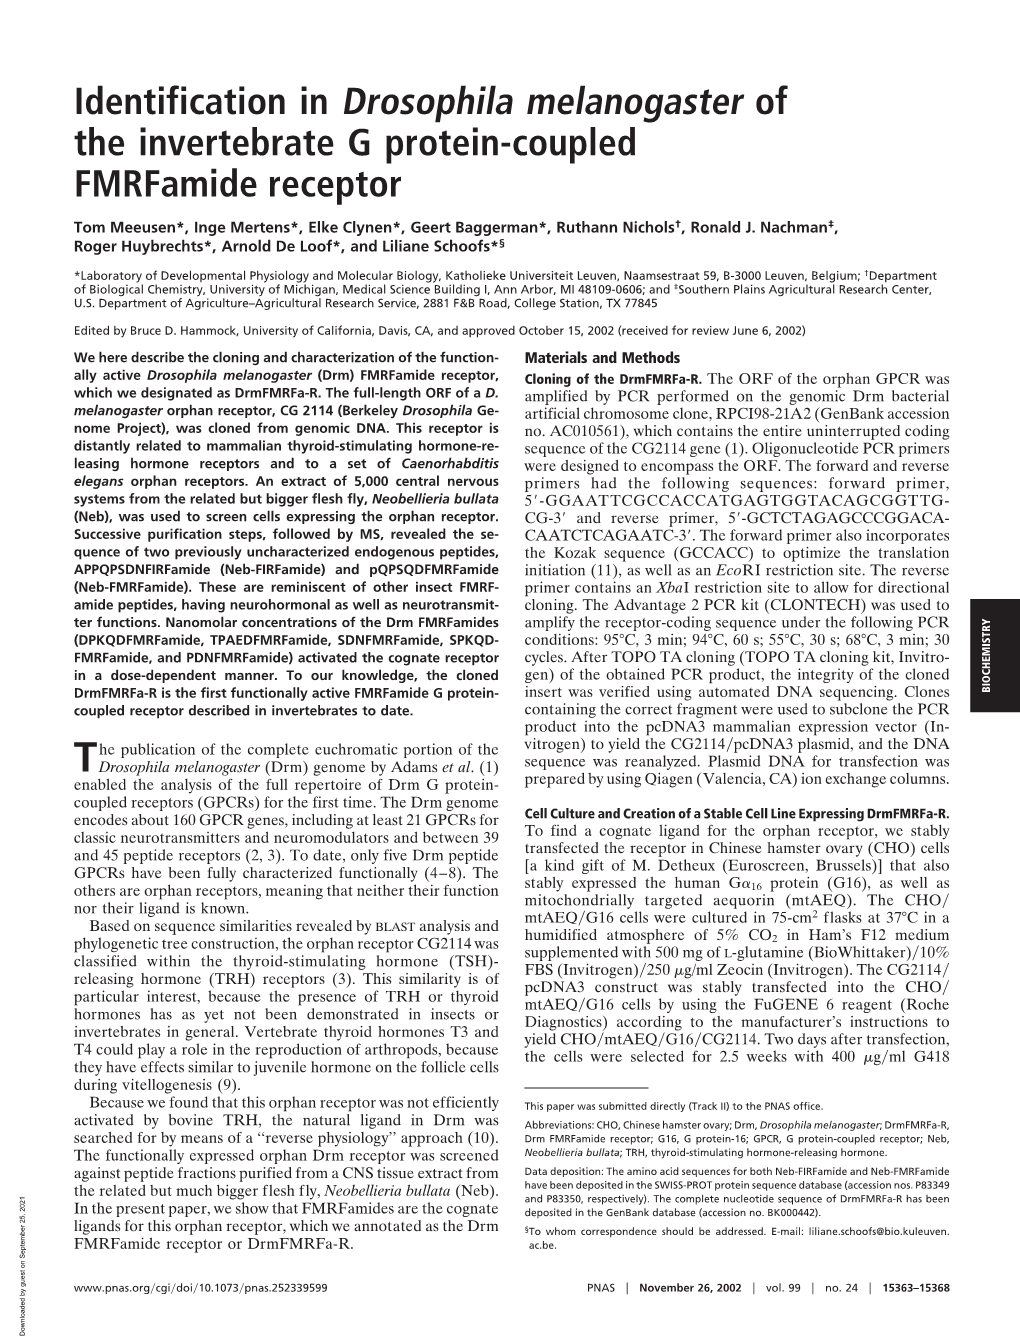 Identification in Drosophila Melanogaster of the Invertebrate G Protein-Coupled Fmrfamide Receptor